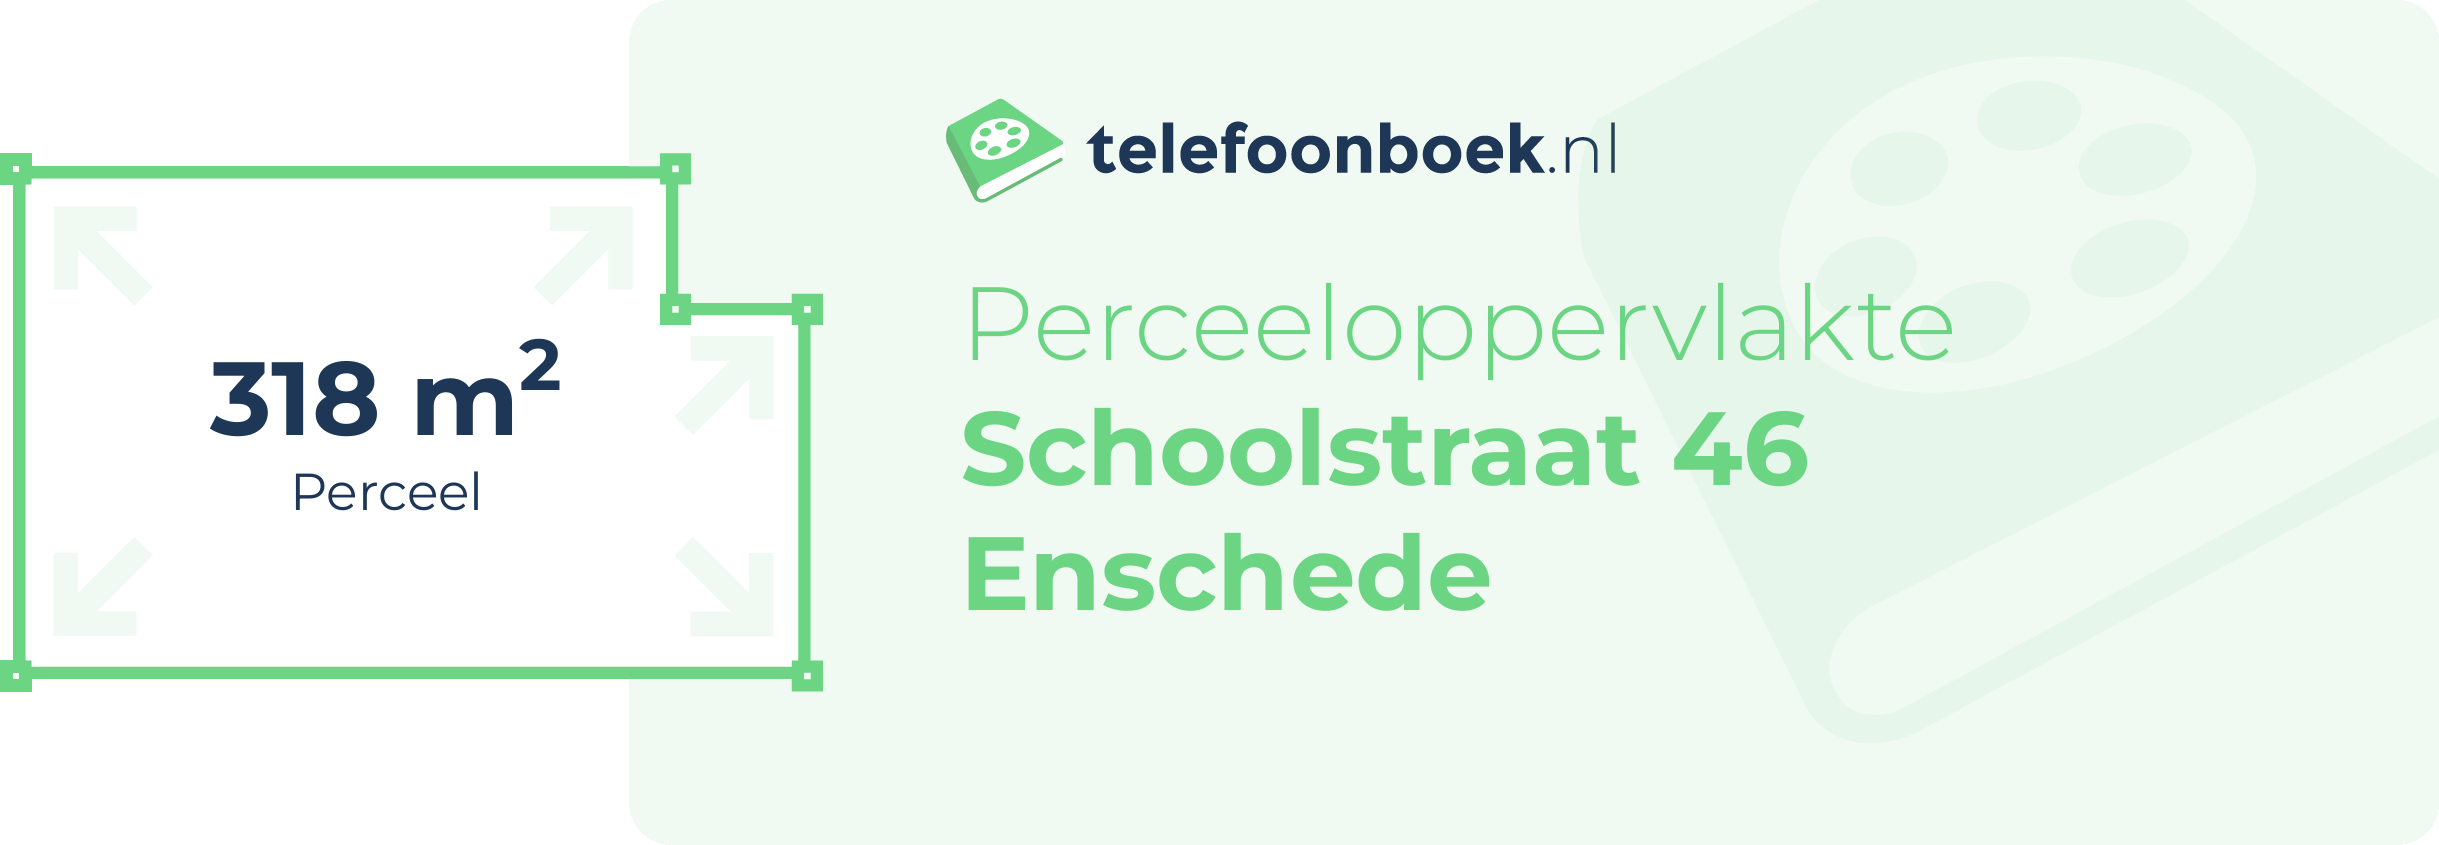 Perceeloppervlakte Schoolstraat 46 Enschede